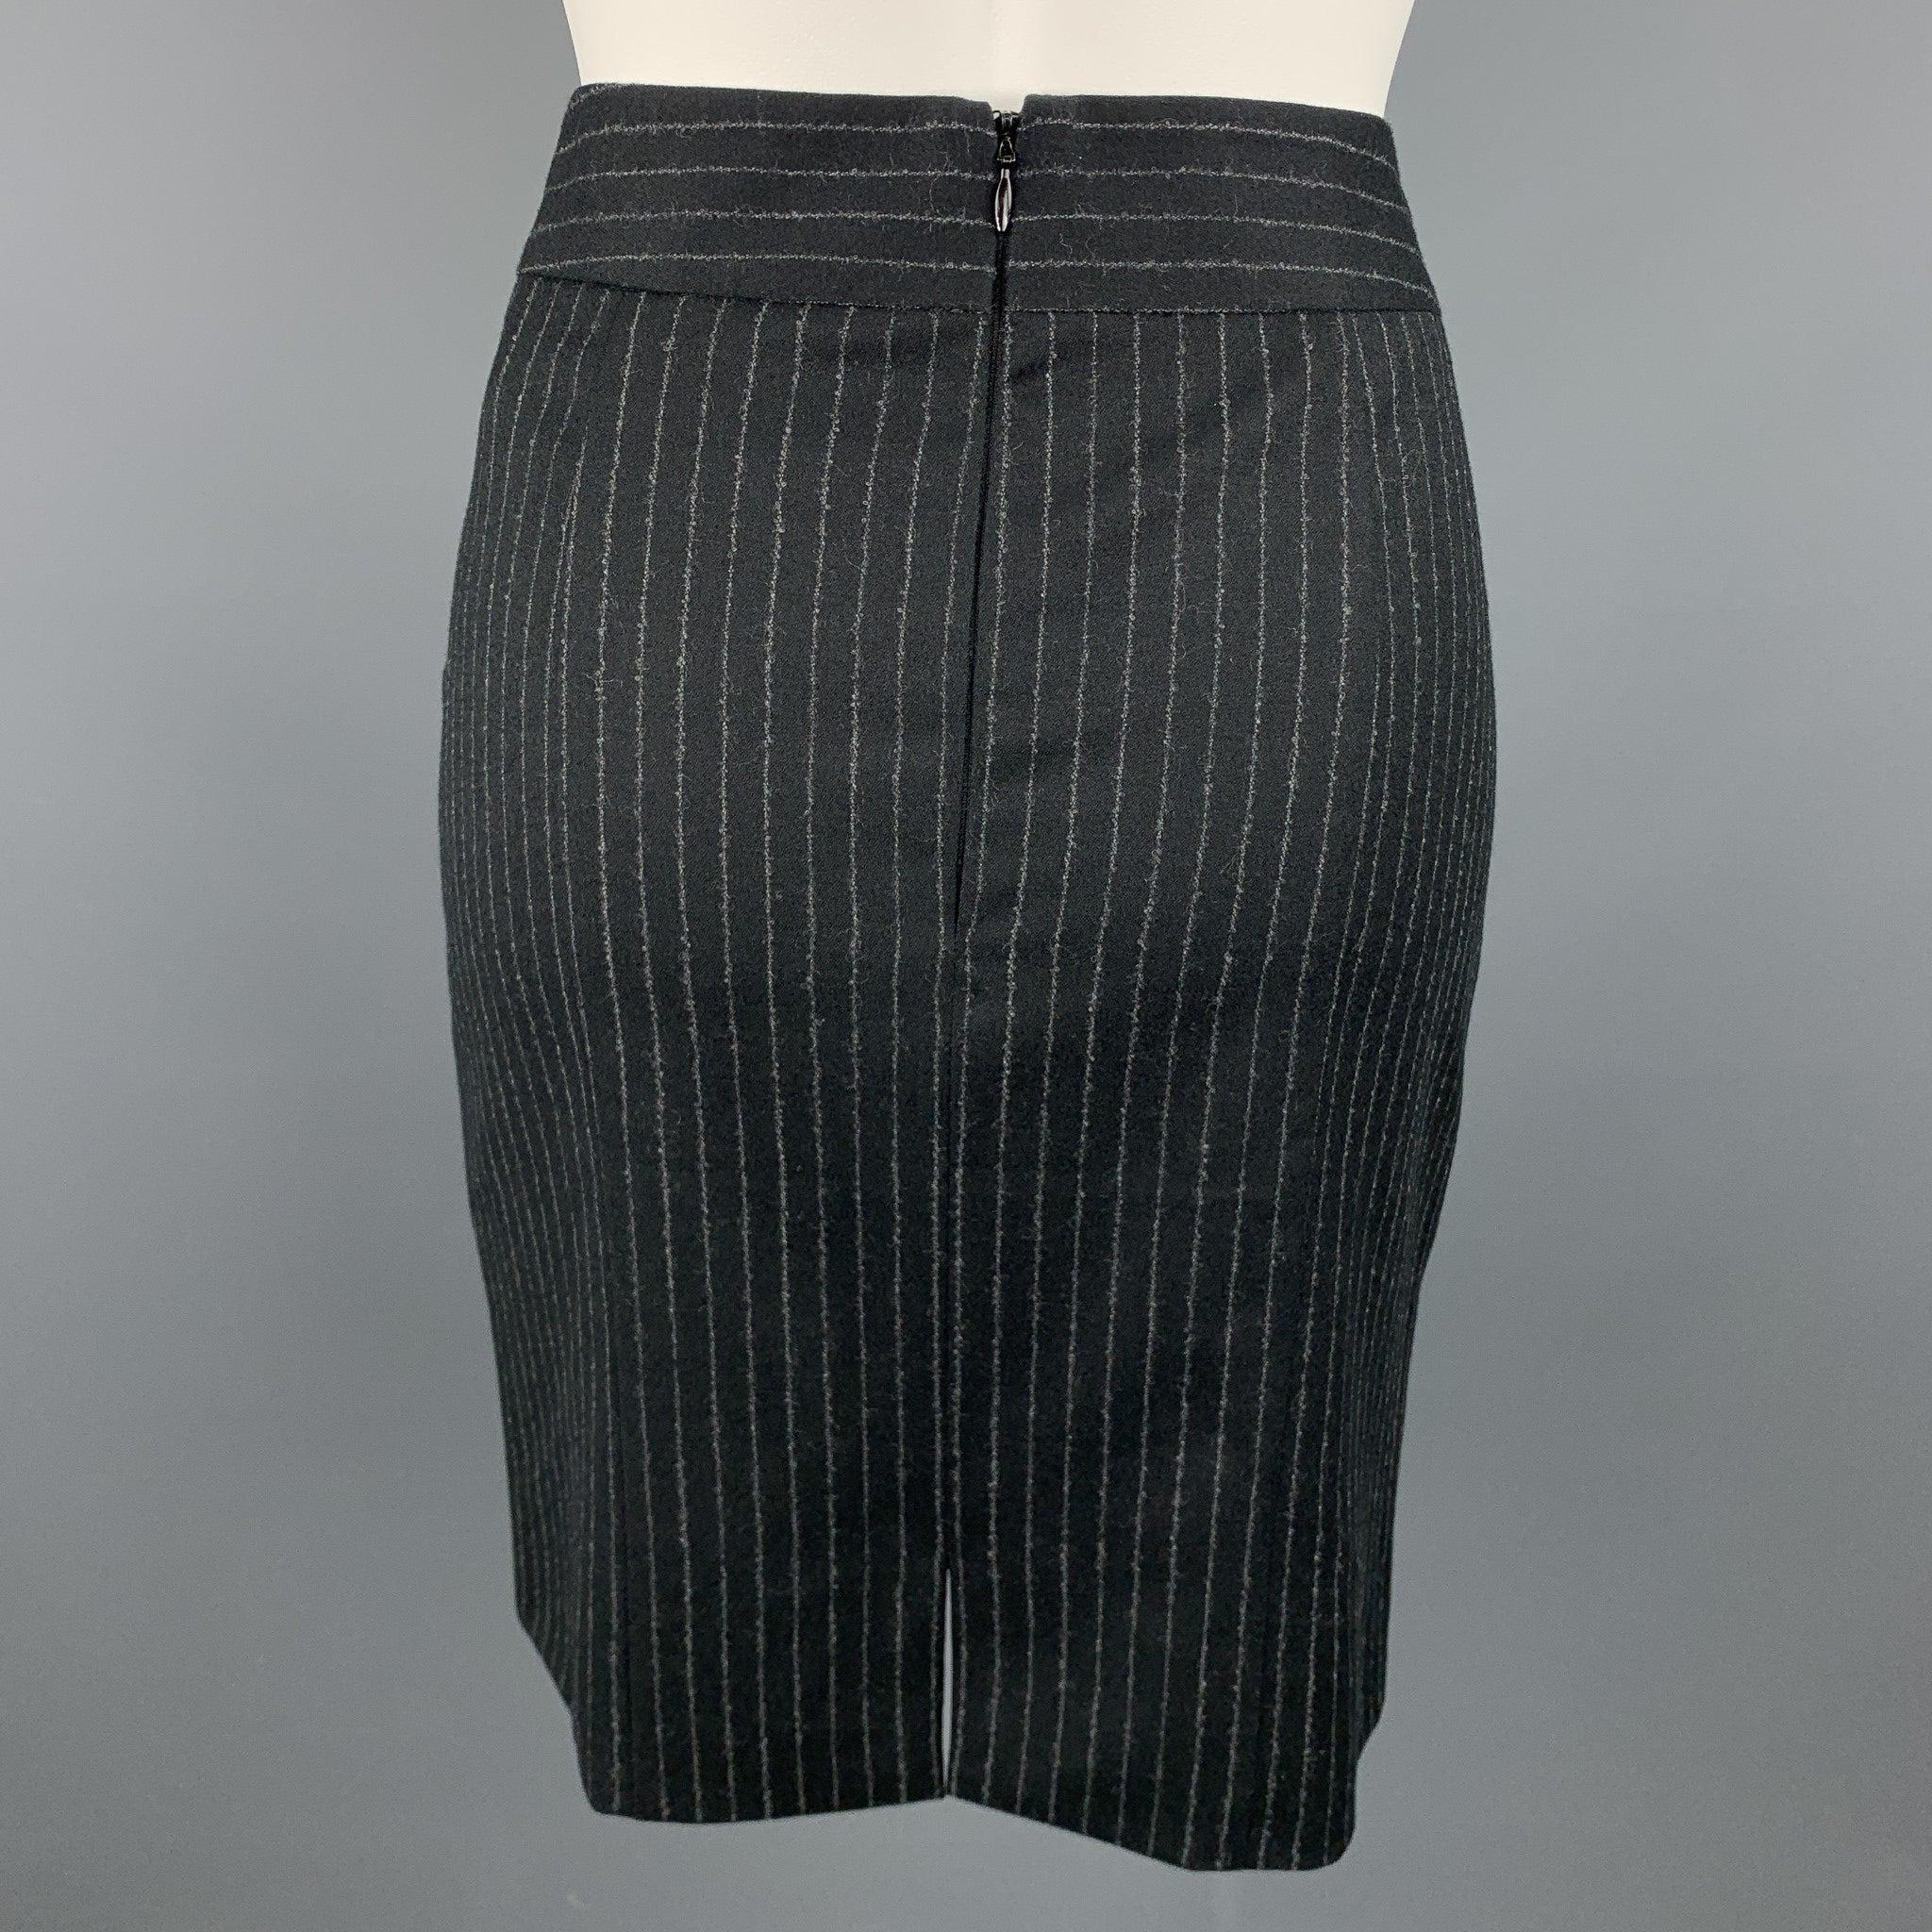 GIORGIO ARMANI Size 4 Black & Grey Pinstripe Pencil Skirt In Good Condition For Sale In San Francisco, CA